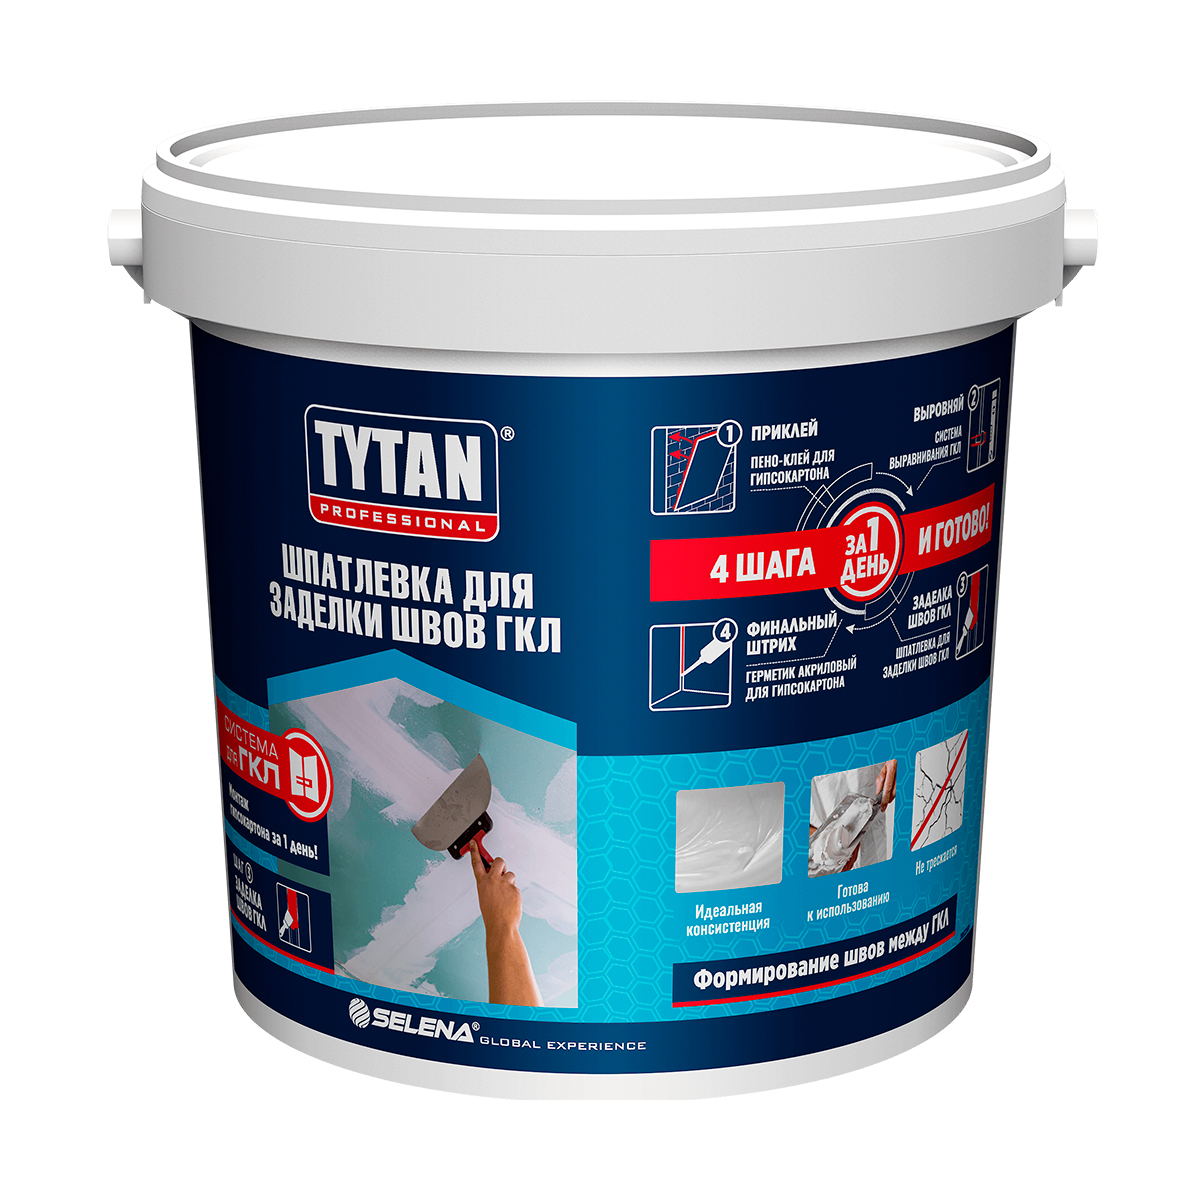 Шпатлевка для гкл полимерная готовая 10 кг (1) "tytan professional"